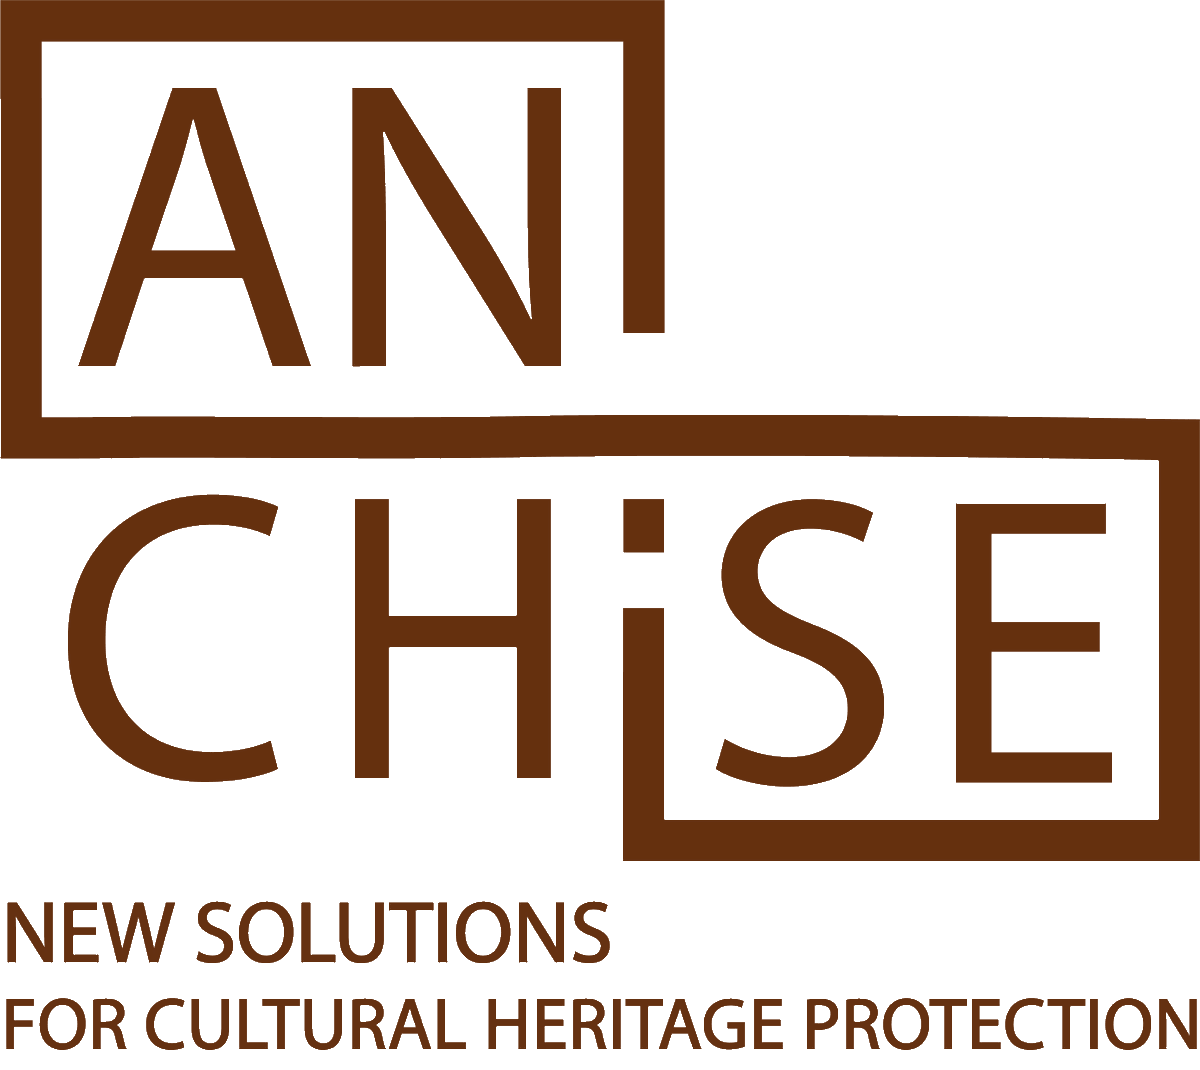 L'@efathenes lance le projet #ANCHISE, qui vise à construire un cadre de réflexion pour la protection du #patrimoine culturel dans l'UE et au-delà. Il s’appui sur les nouvelles #technologies afin de développer des outils innovants pour les professionnels : bit.ly/3JVa8ro